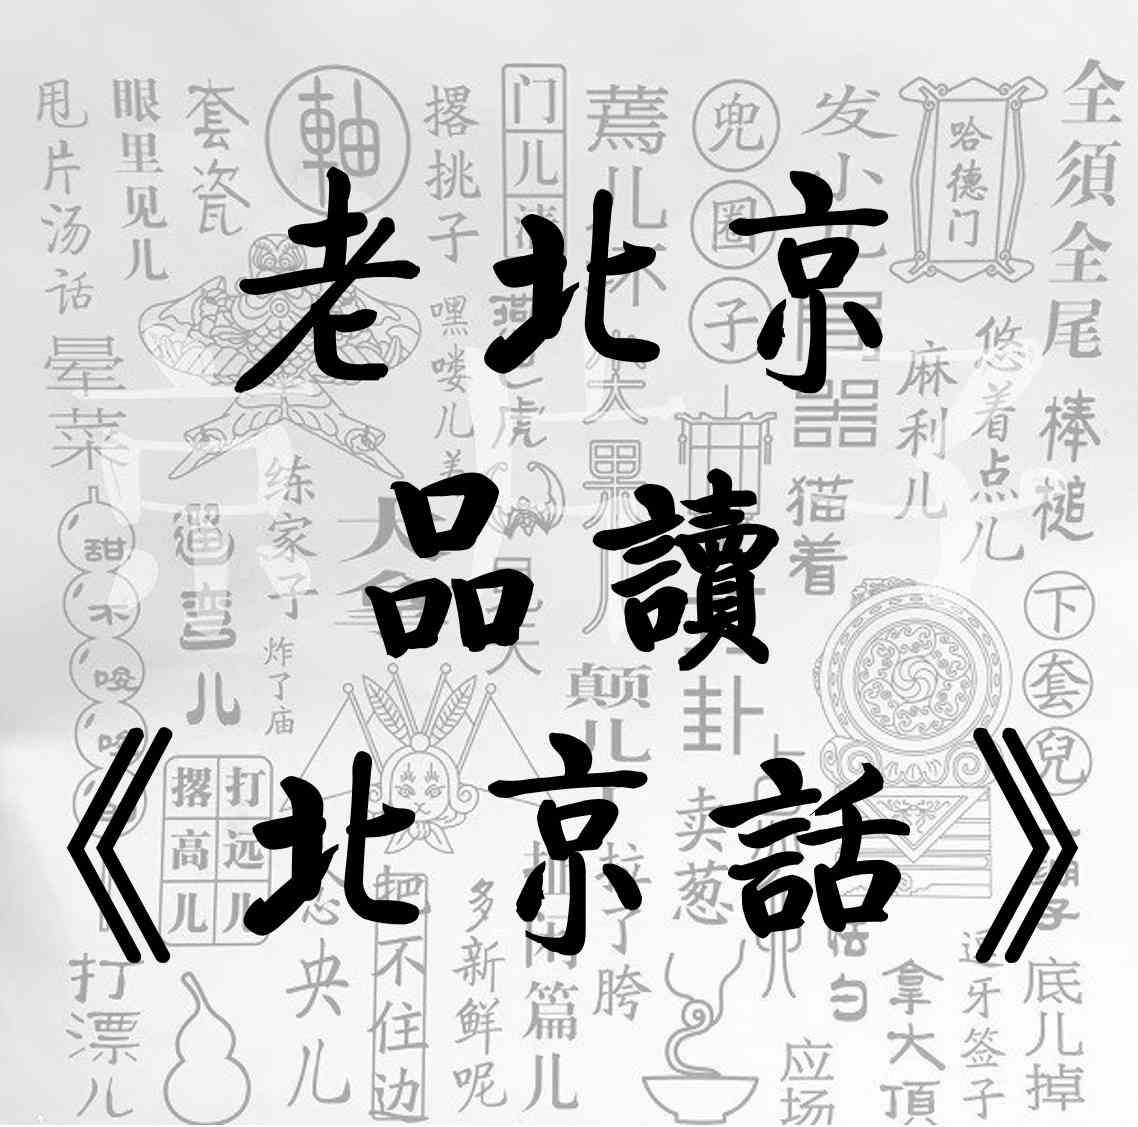 老北京“品读”《北京话》-河汉天流-老松杂谈-佚名